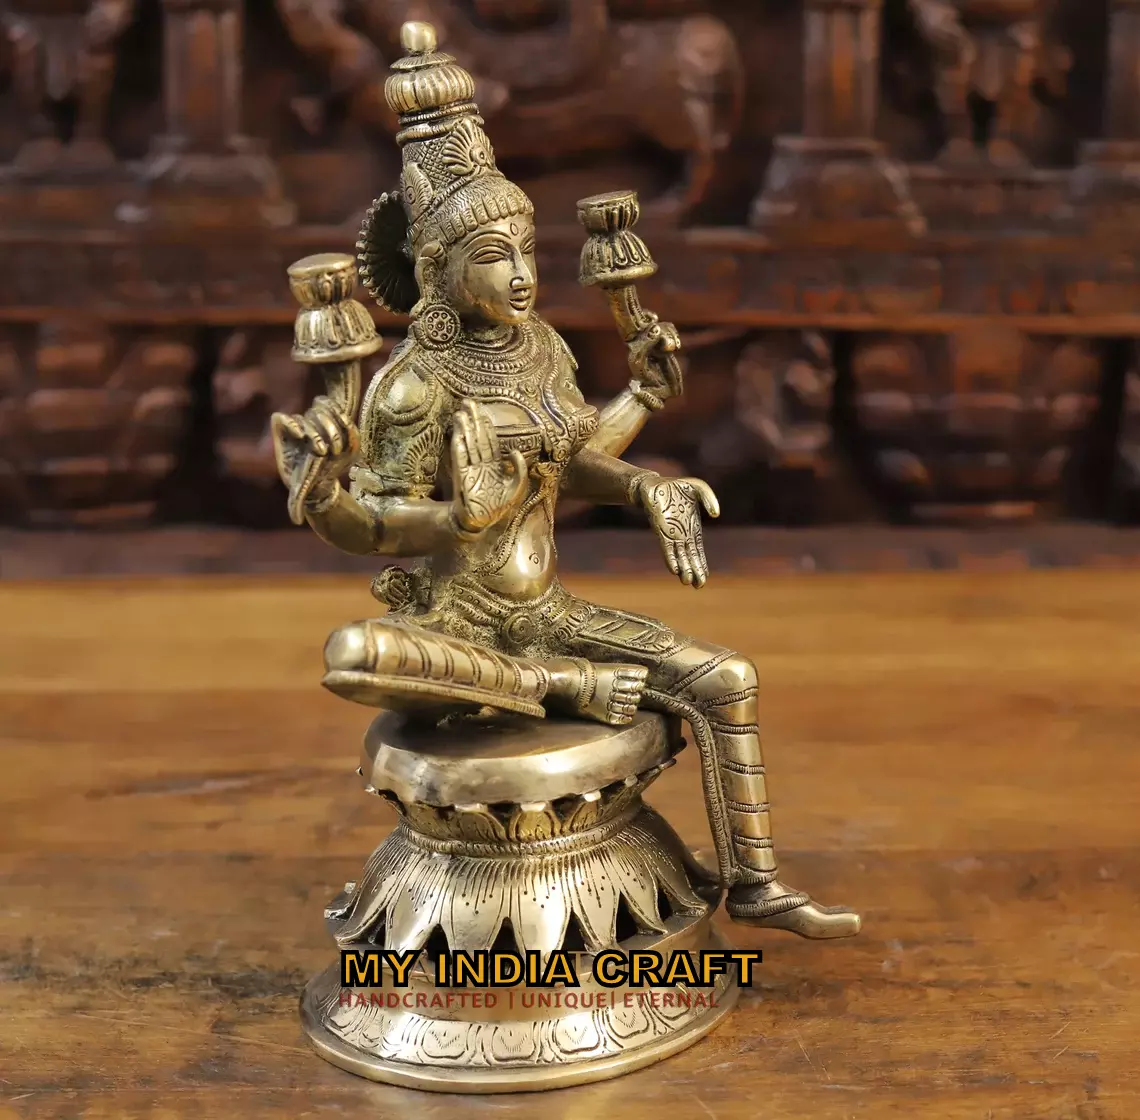 12.5" Lakshmi idol for pooja